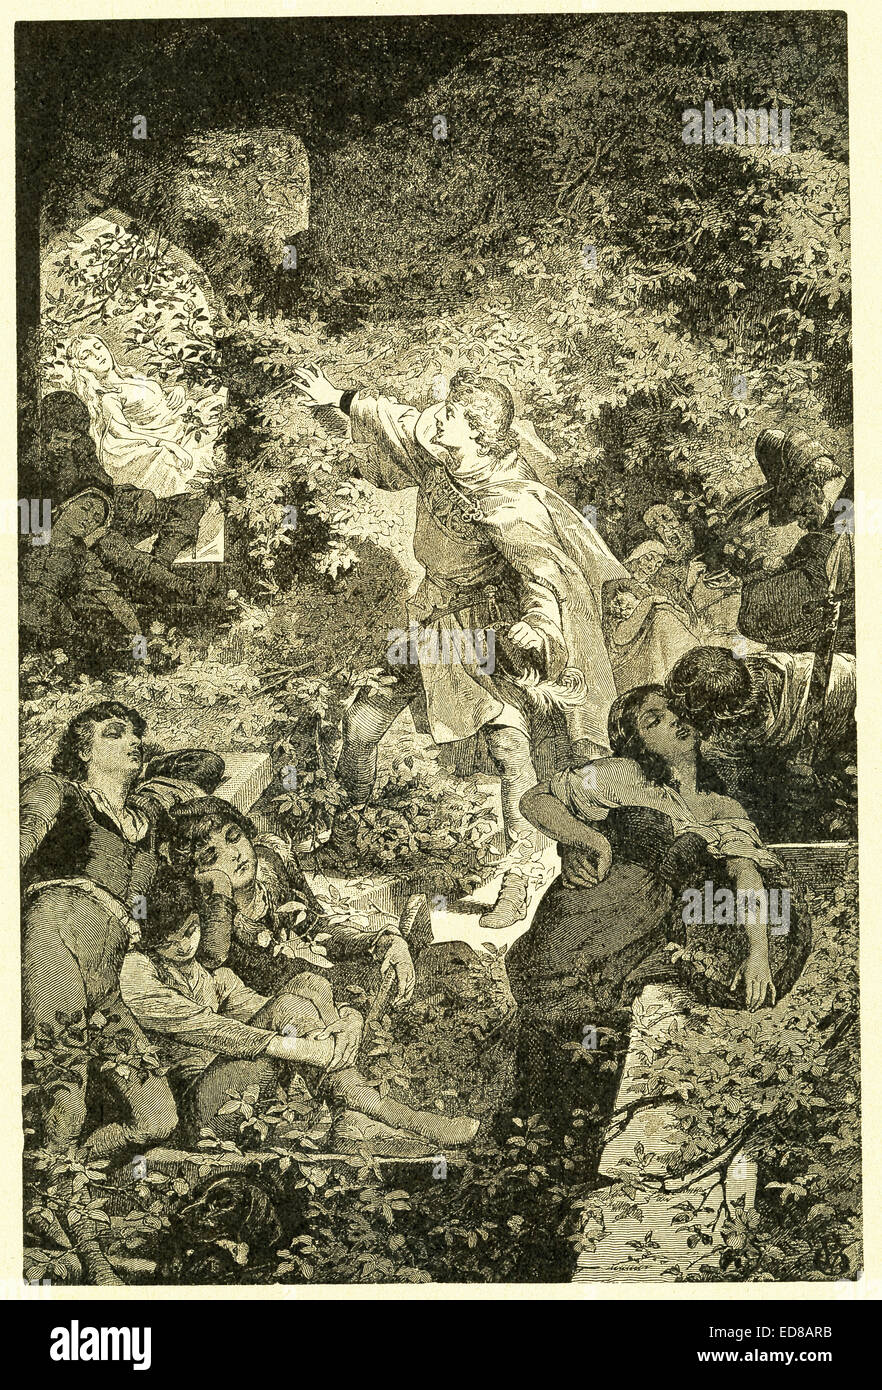 En 1812, les frères Grimm, Jacob et Wilhelm, publié contes pour enfants, une collection contes allemands. Cette illustration accompagnée le conte 'Sleeping Beauty' et montre la princesse Rose endormie et d'être vu par le prince, qui va l'embrasser et service formulaire ses 100 ans de sommeil. Cette image est de Grimms Eventyr (Grimm's Fairy Tales) par Carl Ewald, publié en 1922. Le frontispice a l'illustrations de Philip Grot Johann et R. Leinweber. Johann était un célèbre illustrateur allemand et n'pièces pour Goethe. Banque D'Images